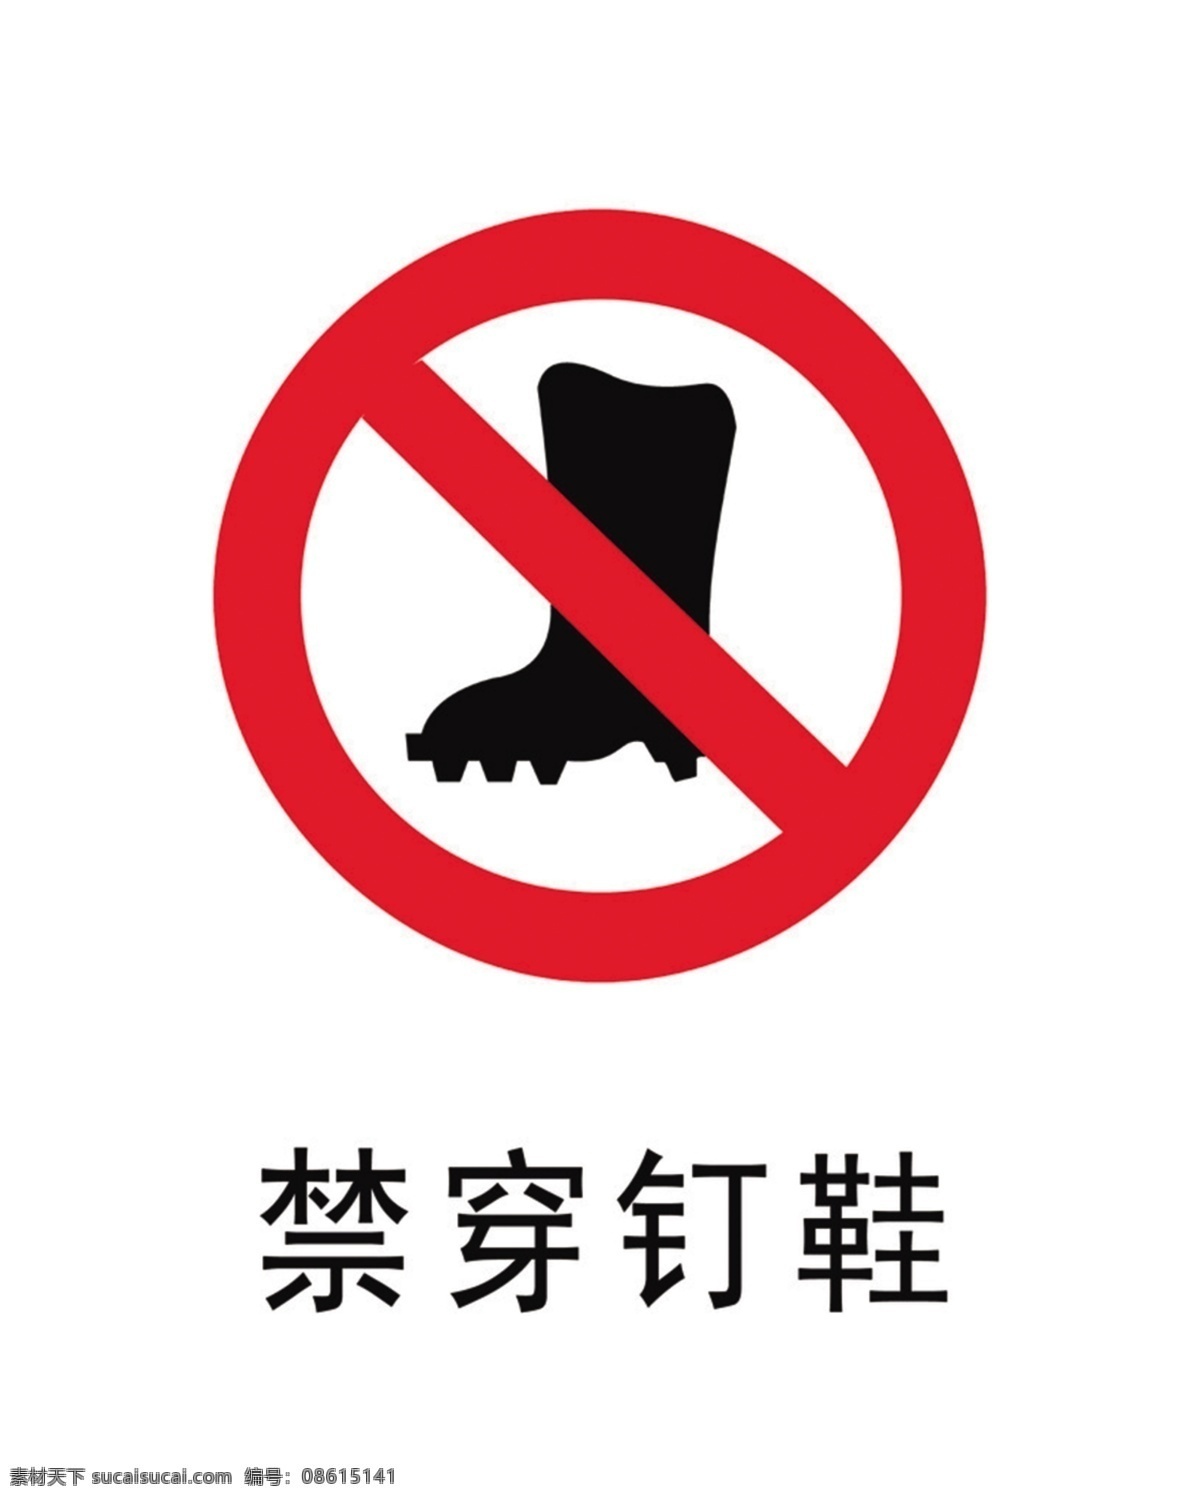 禁穿钉鞋 禁穿 钉鞋 安全 警示 标语 安全警示标牌